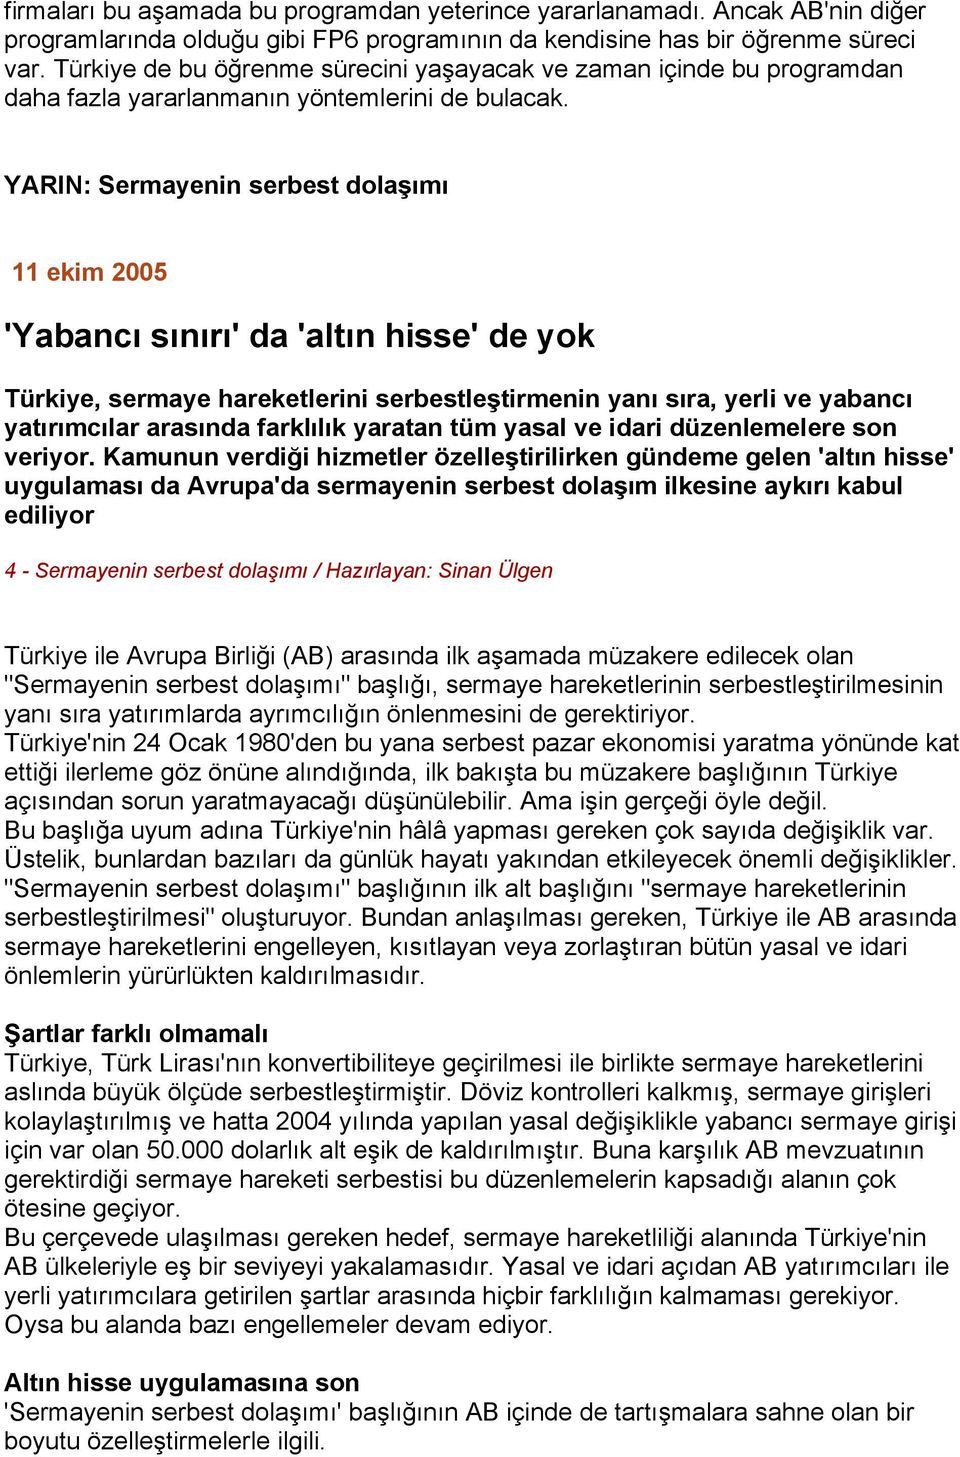 YARIN: Sermayenin serbest dolaşımı 11 ekim 2005 'Yabancı sınırı' da 'altın hisse' de yok Türkiye, sermaye hareketlerini serbestleştirmenin yanı sıra, yerli ve yabancı yatırımcılar arasında farklılık